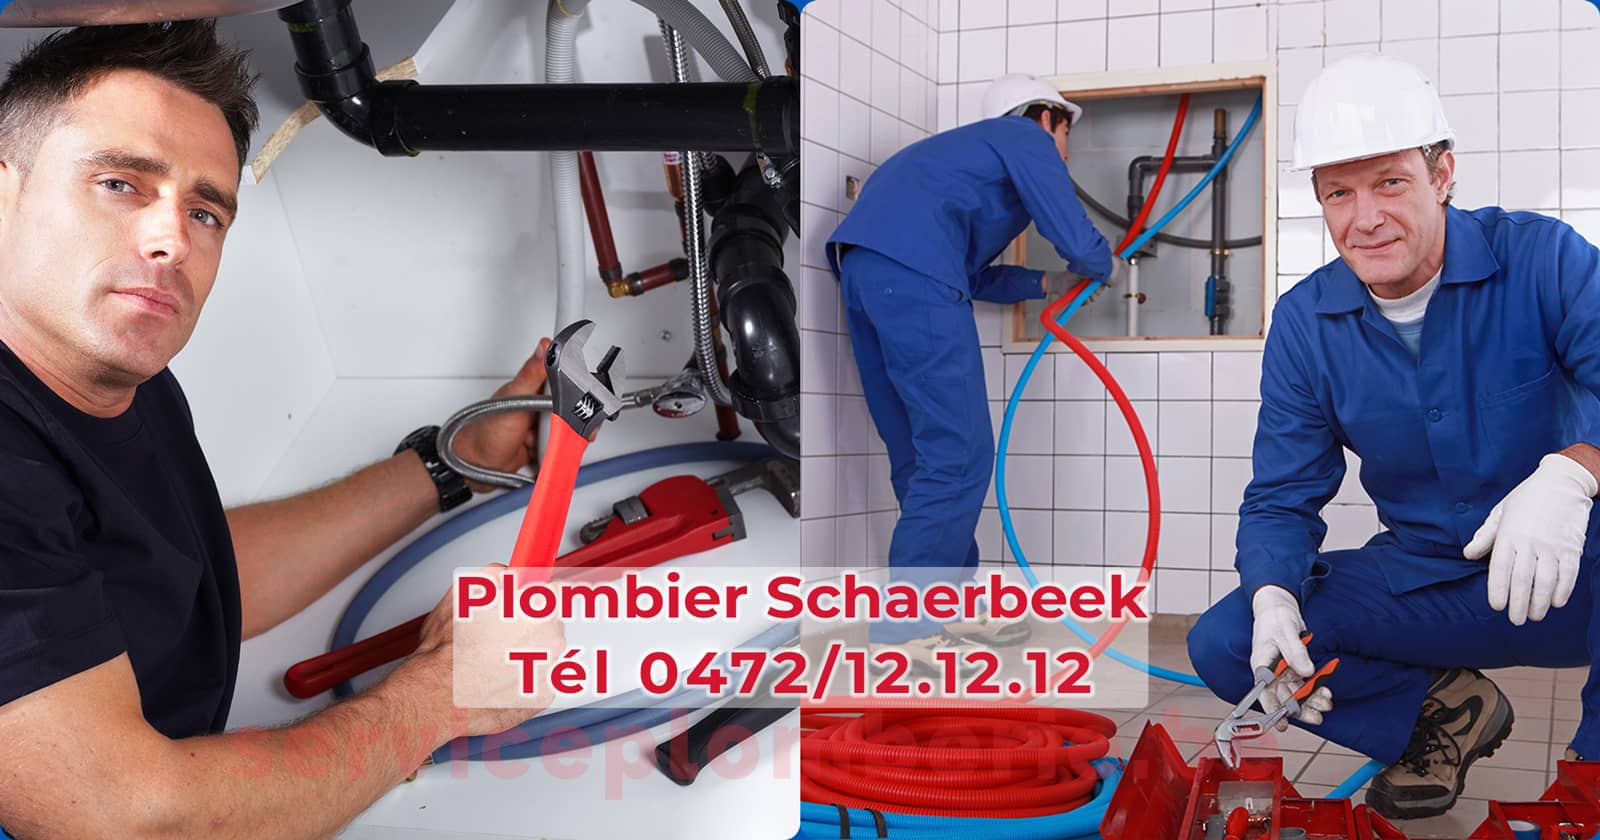 Plombier Schaerbeek Agréé Professionnel Service Plomberie Tél 0472/12.12.12